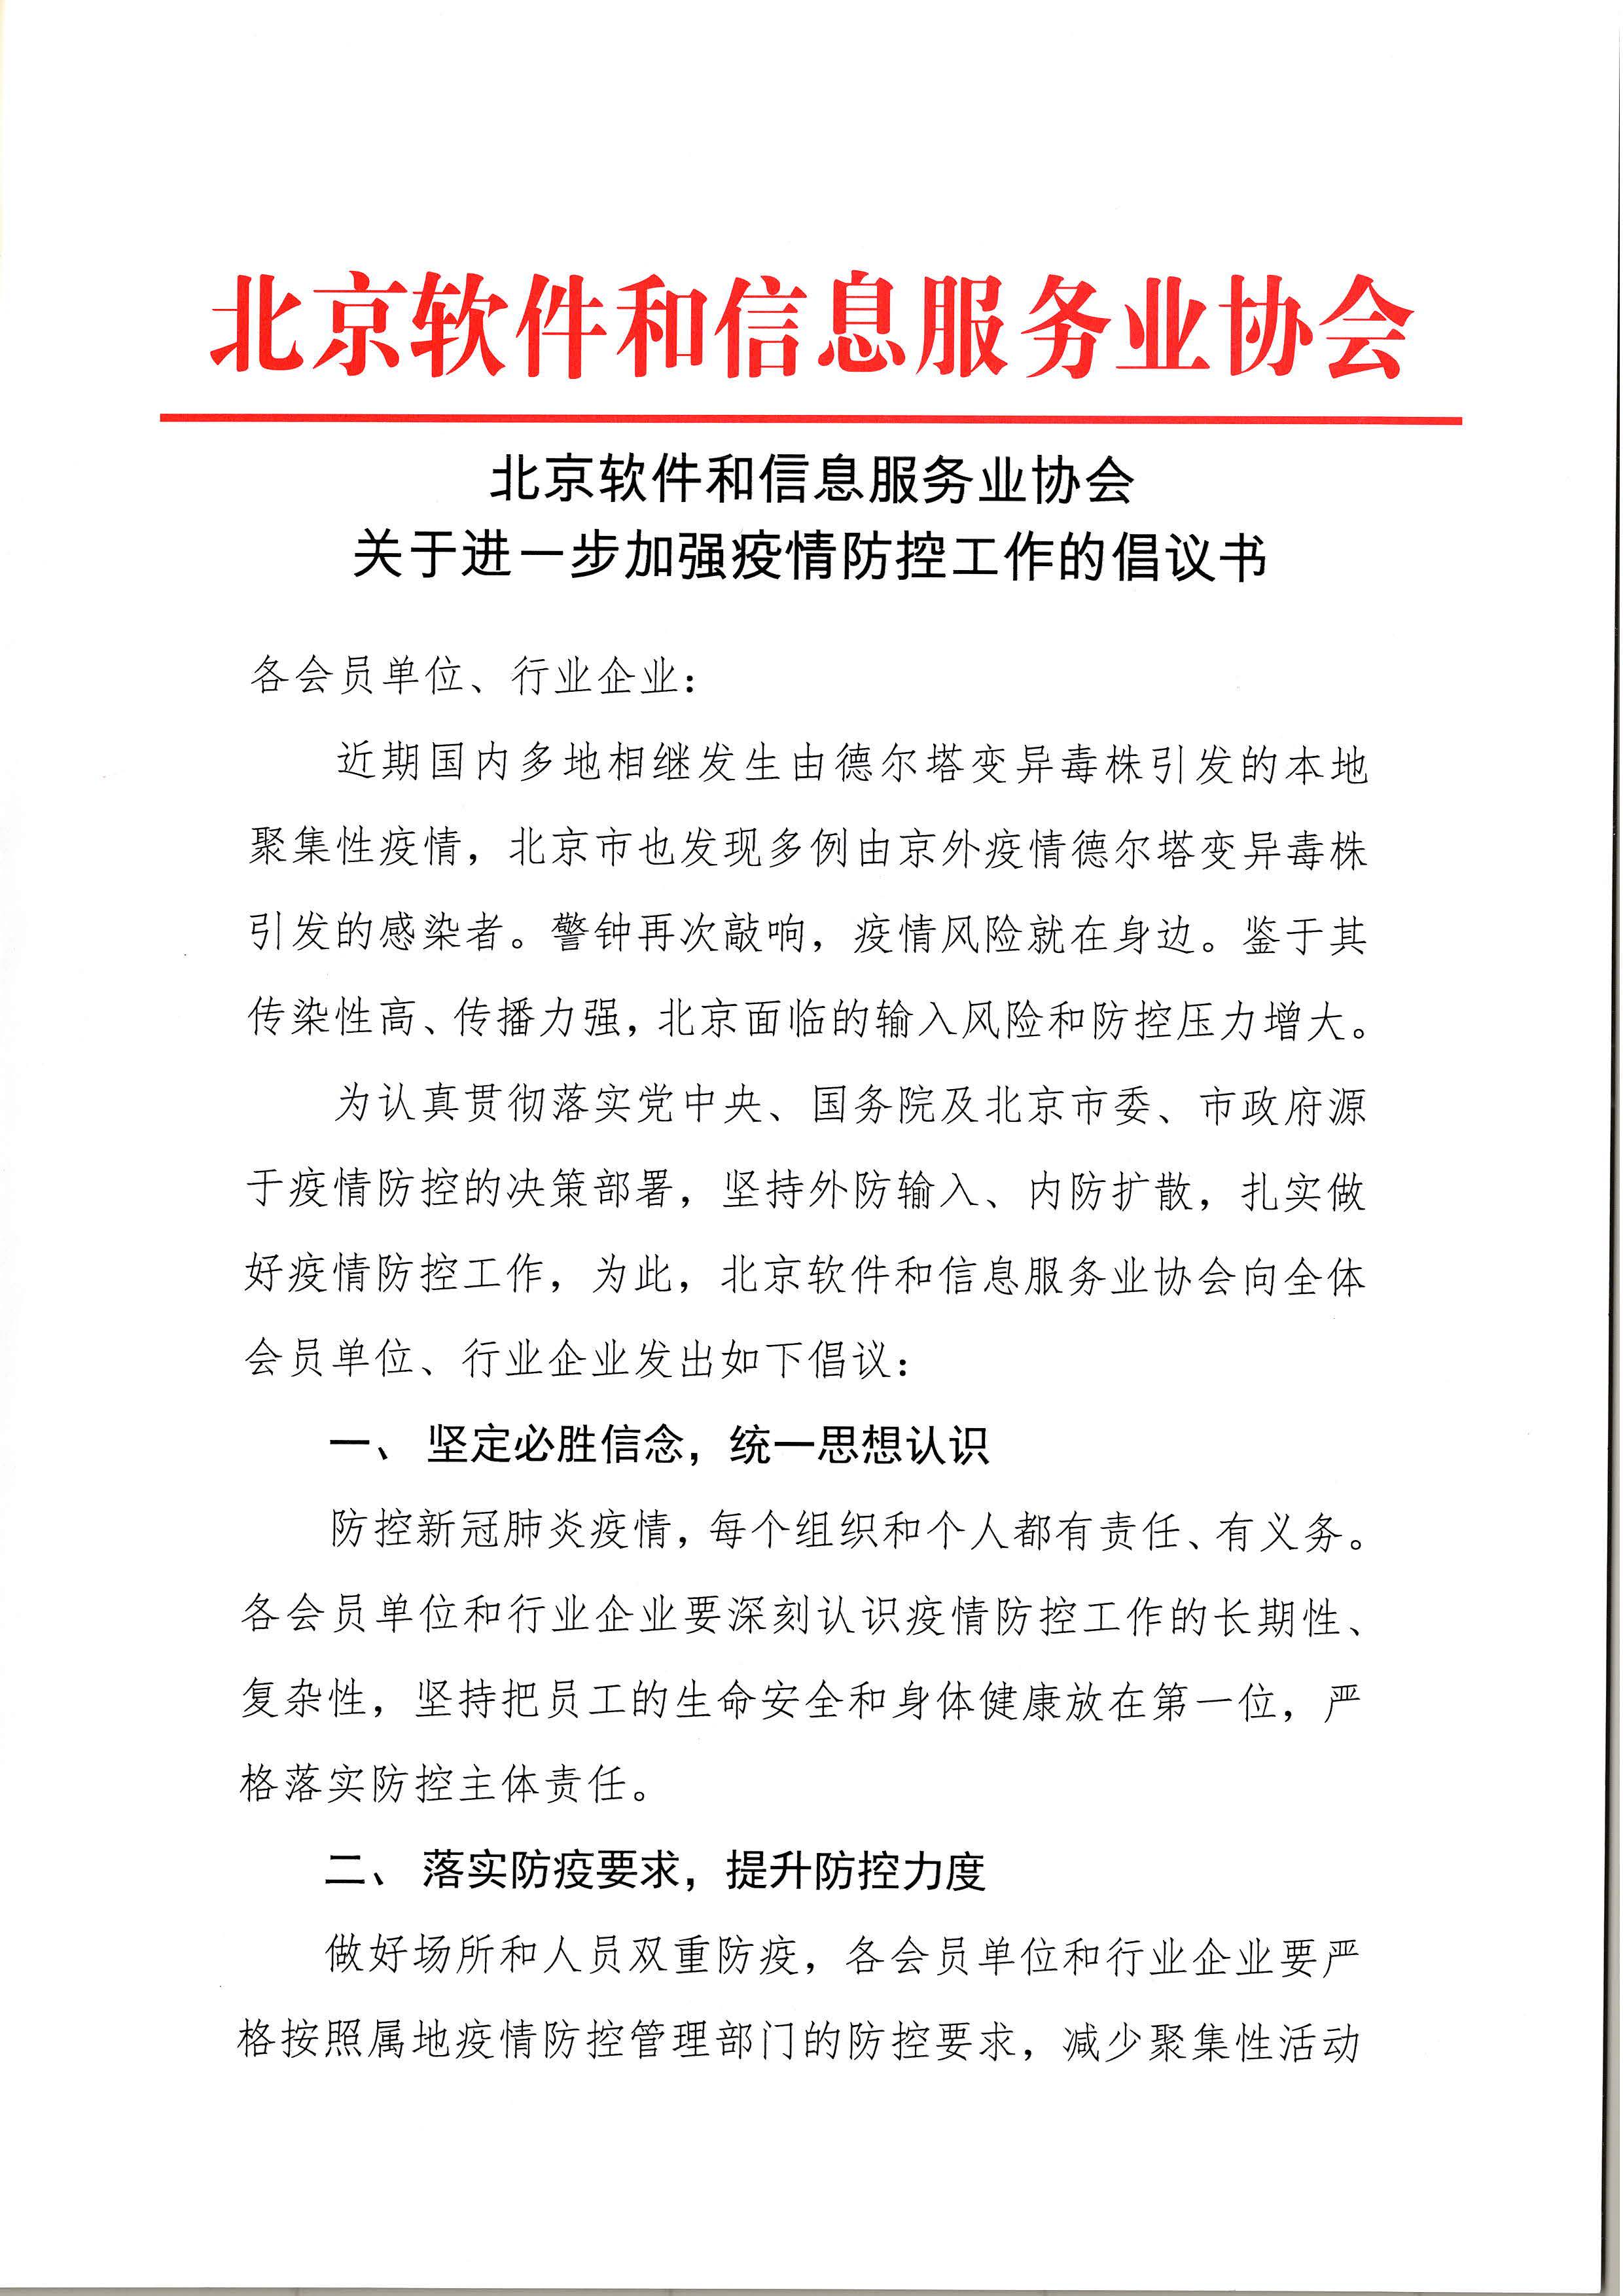 北京软件和信息服务业协会关于进一步加强疫情防控工作的倡议书_页面_1.jpg